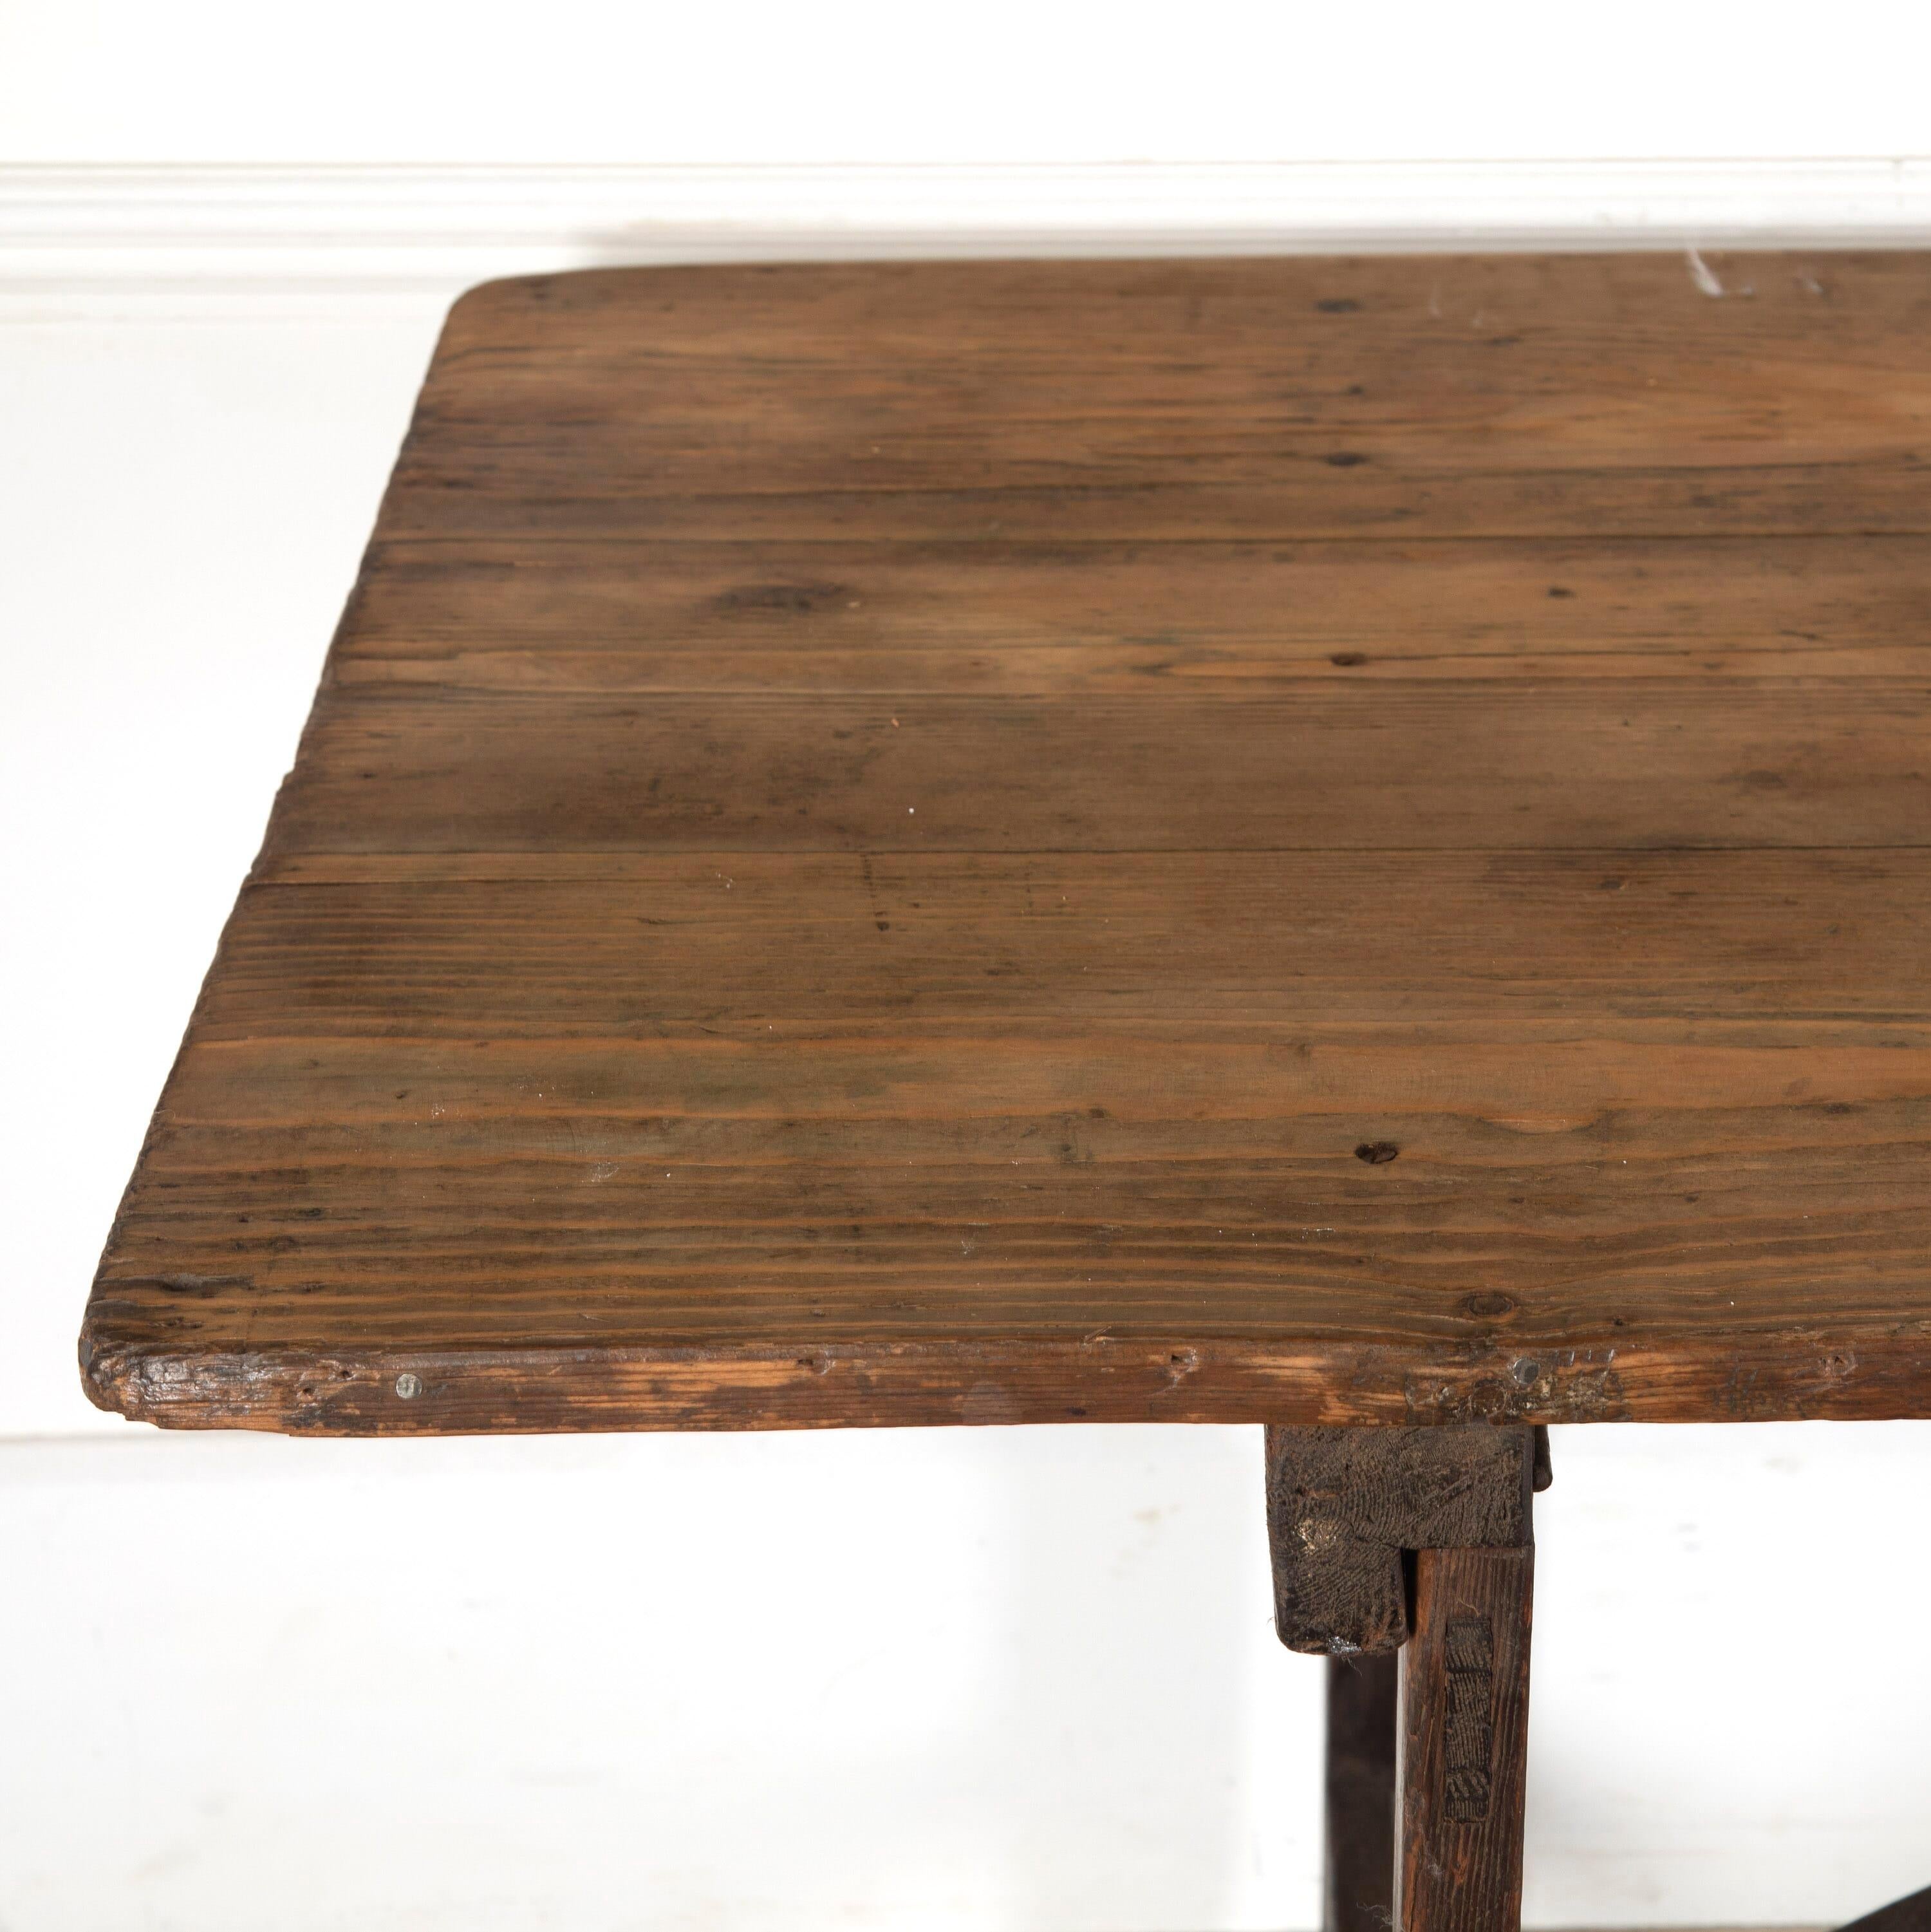 Grande table à tréteaux en pin anglais du 19e siècle.

Cette table est dotée d'un plateau en planches à la patine magnifique, de tréteaux et d'un joli châssis voûté reliant les deux extrémités. 

De bonne taille et robuste, elle ferait une